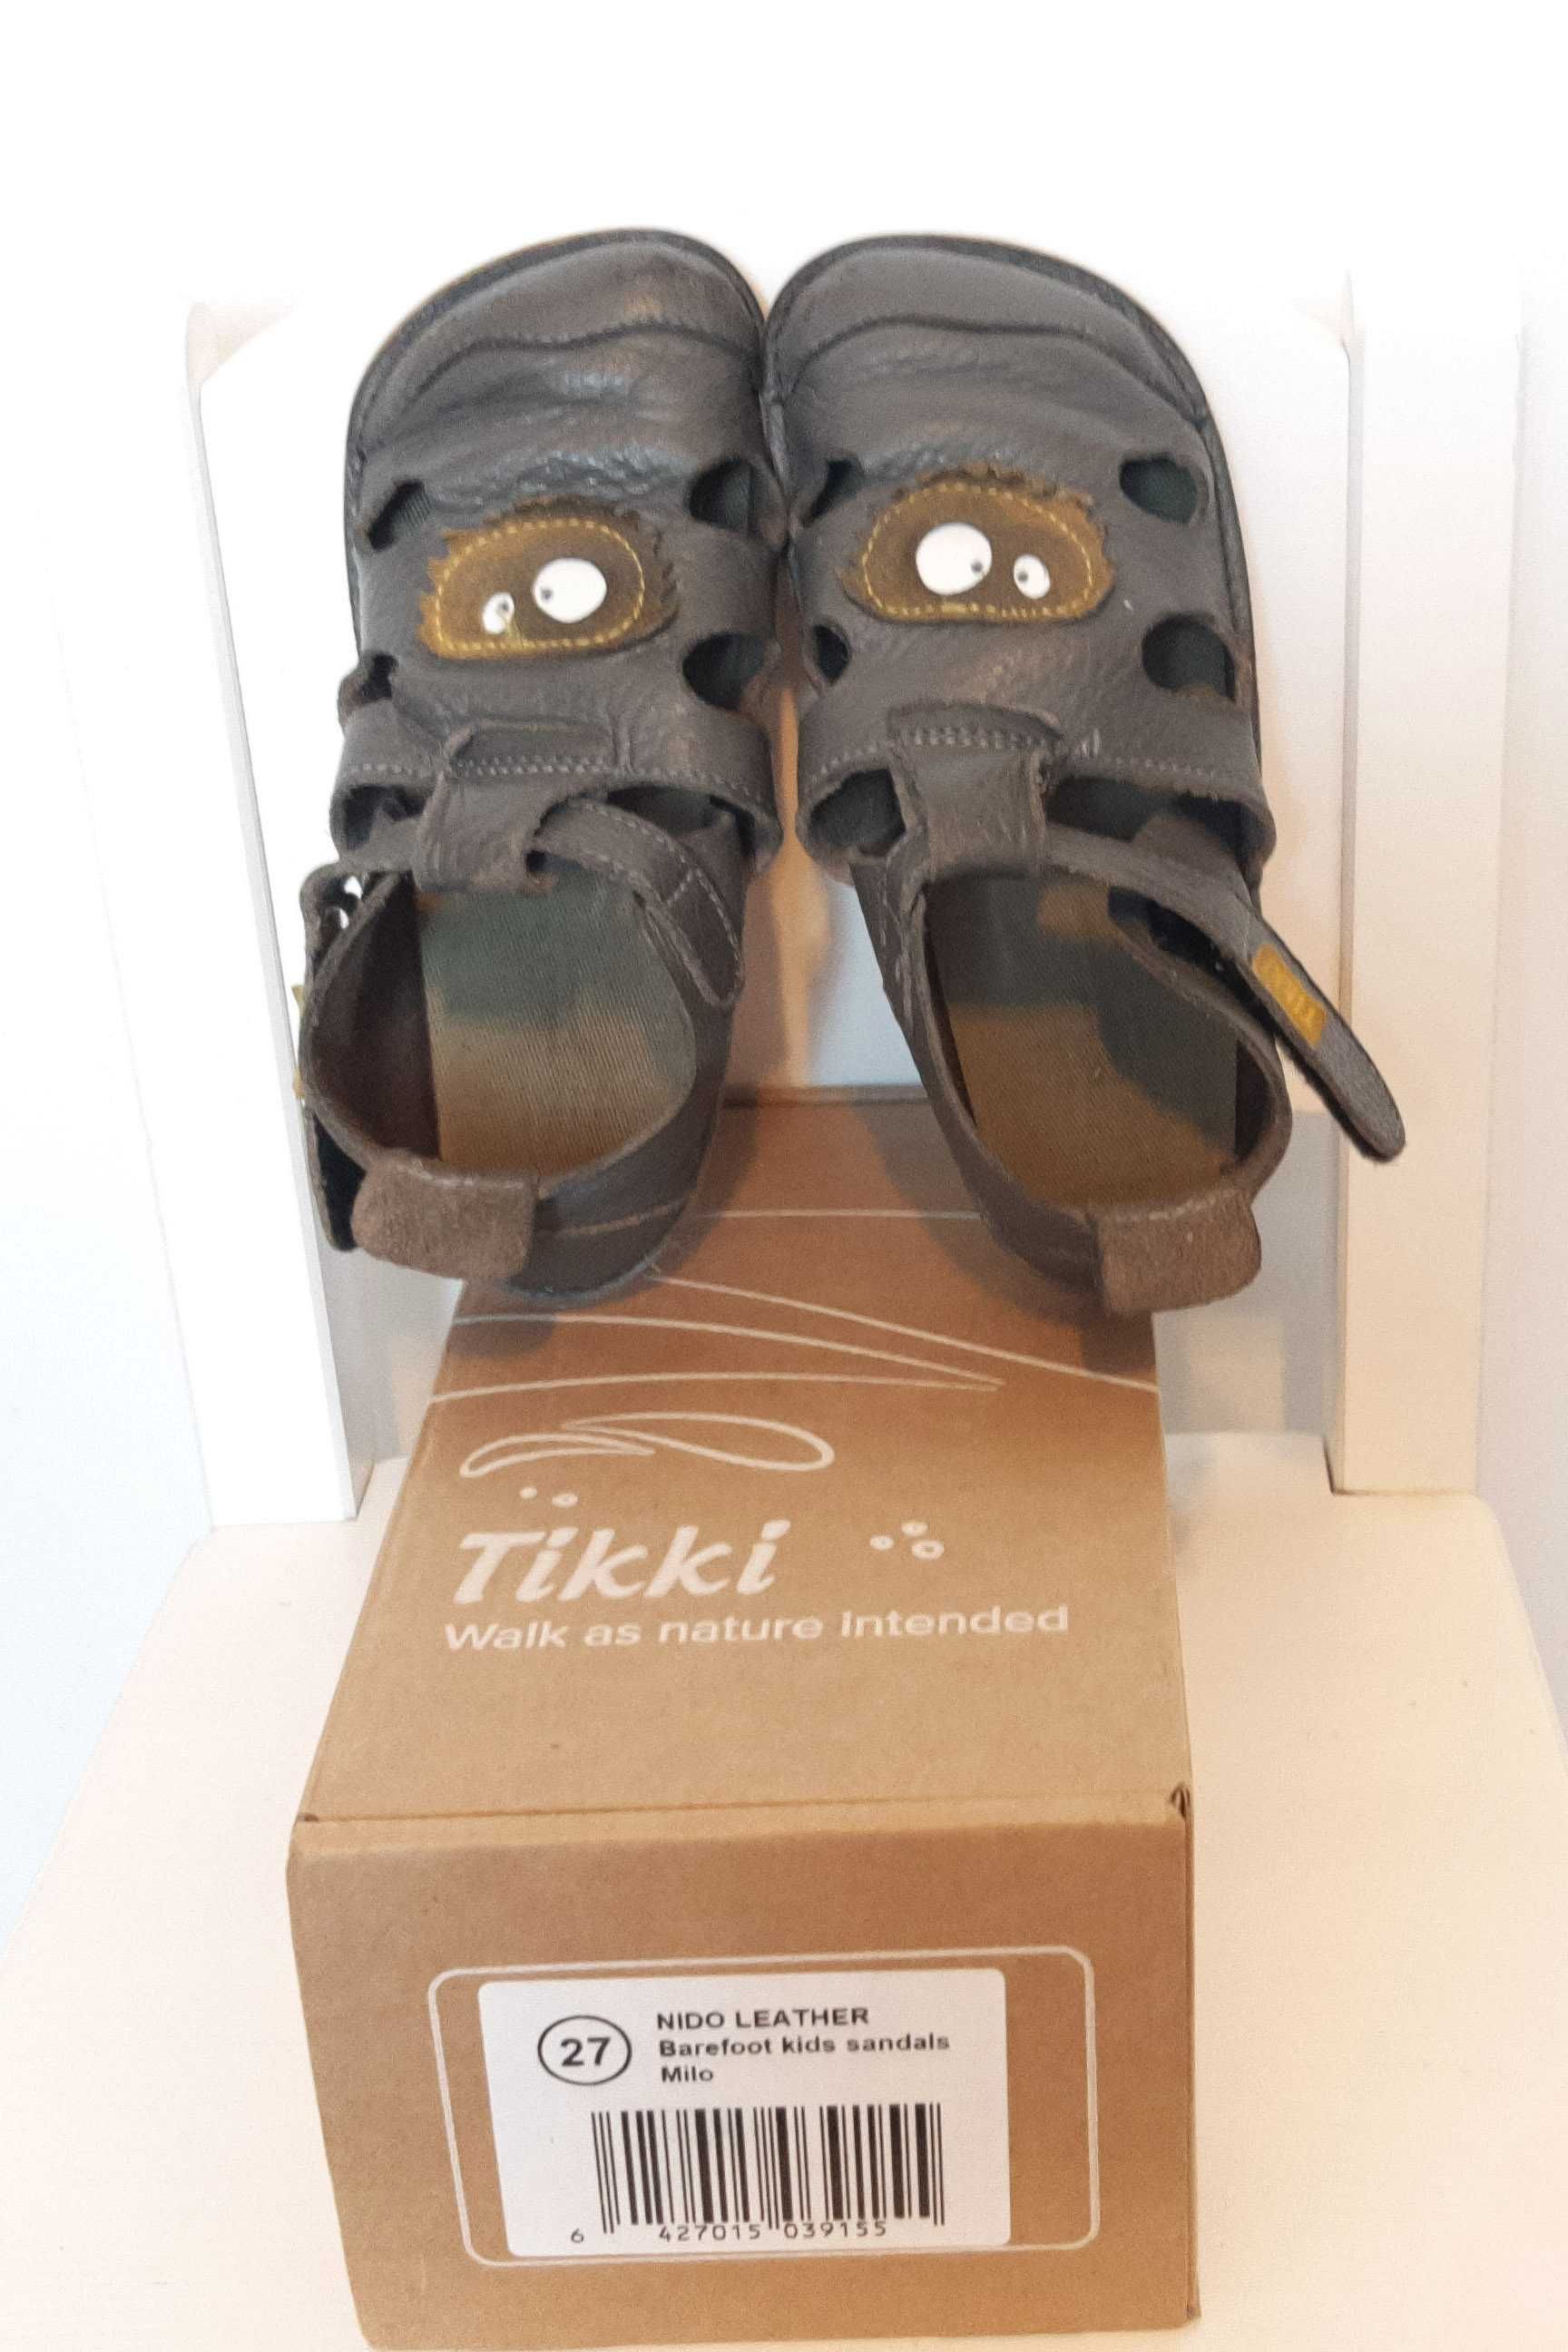 Pantofi Tikki stare foarte buna, marimea 27 - 18cm - doar Bucuresti